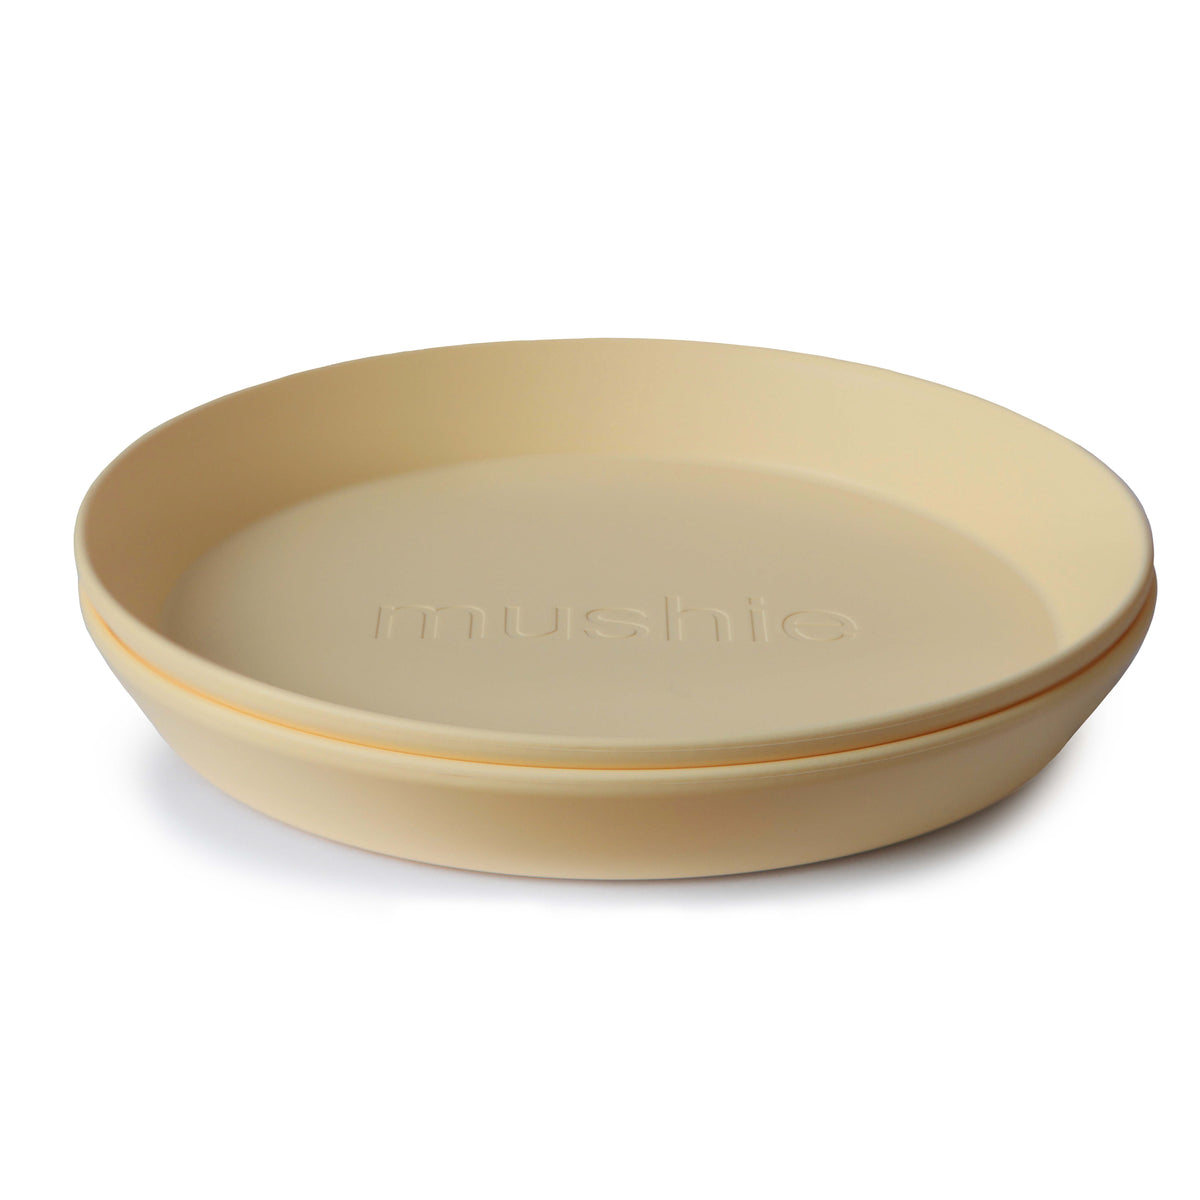 Mushie | Round Plate - 2pk